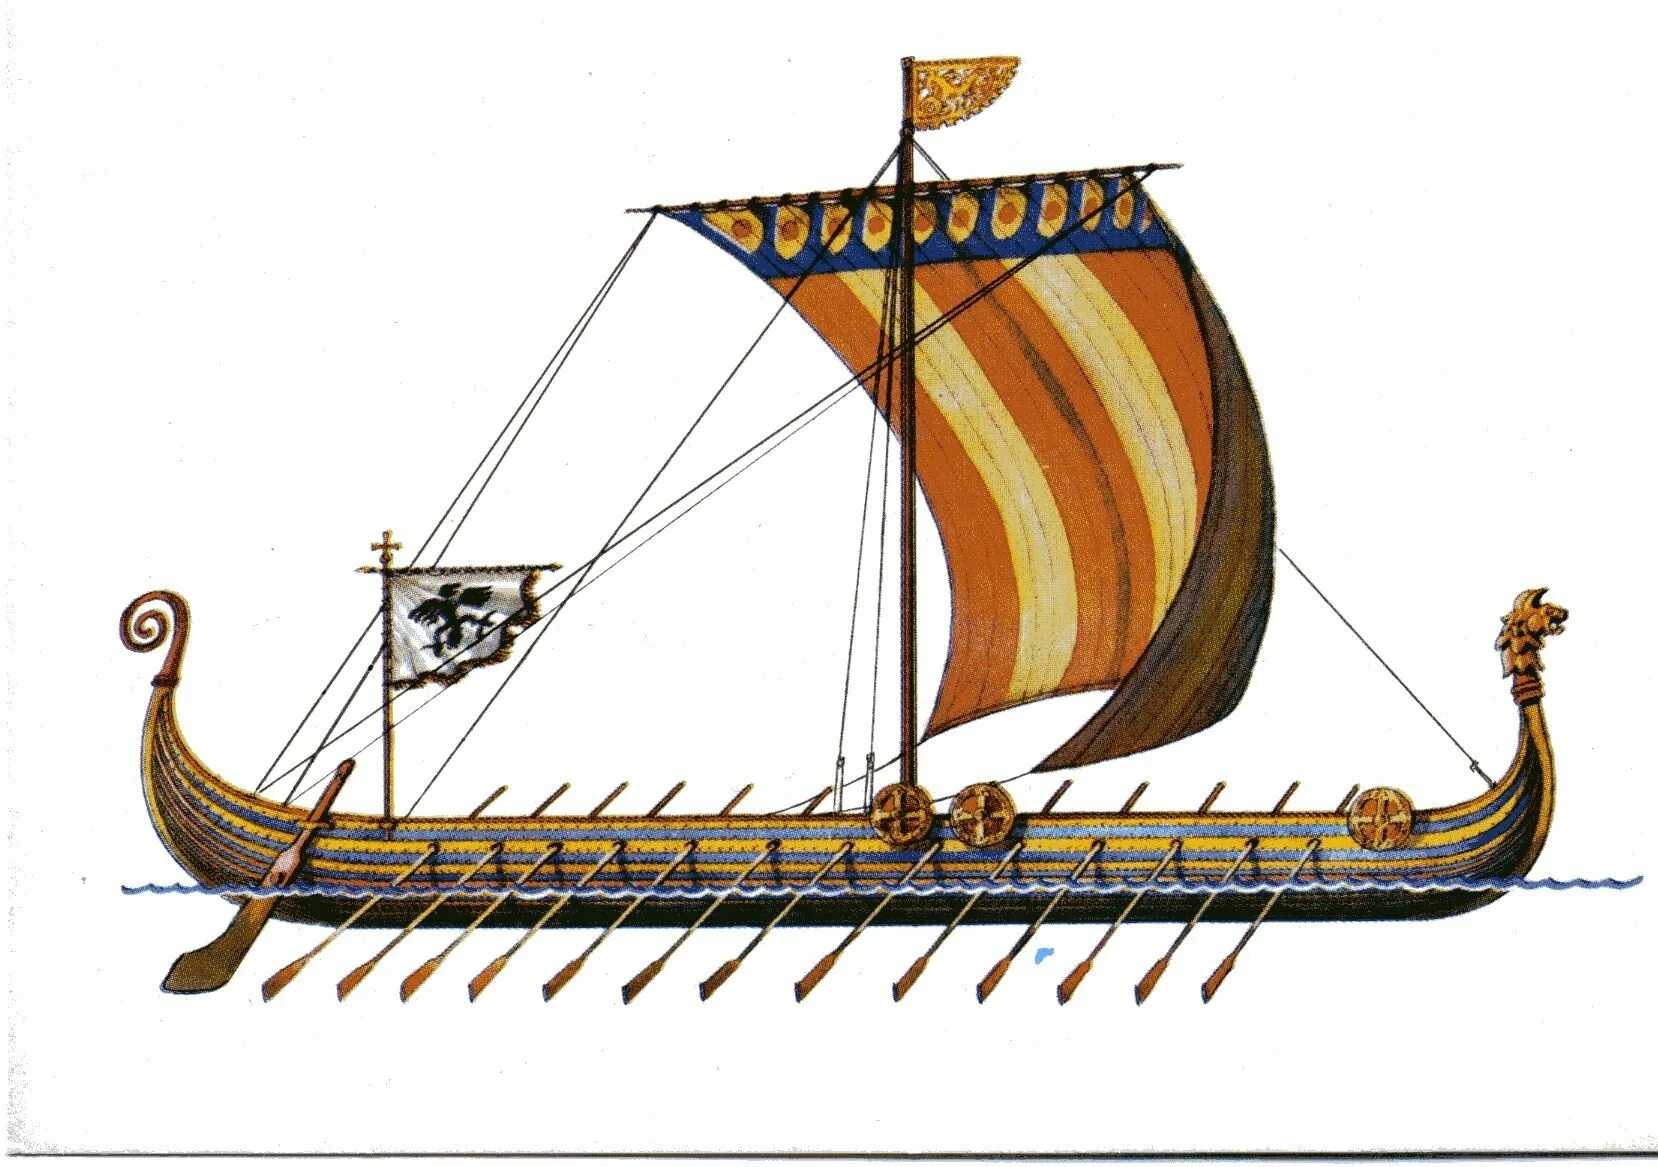 Корабль викингов Drakkar. Ладья викингов дракар. Корабль викингов Драккар 10 век. Корабли Вильгельма завоевателя. Имя ладья